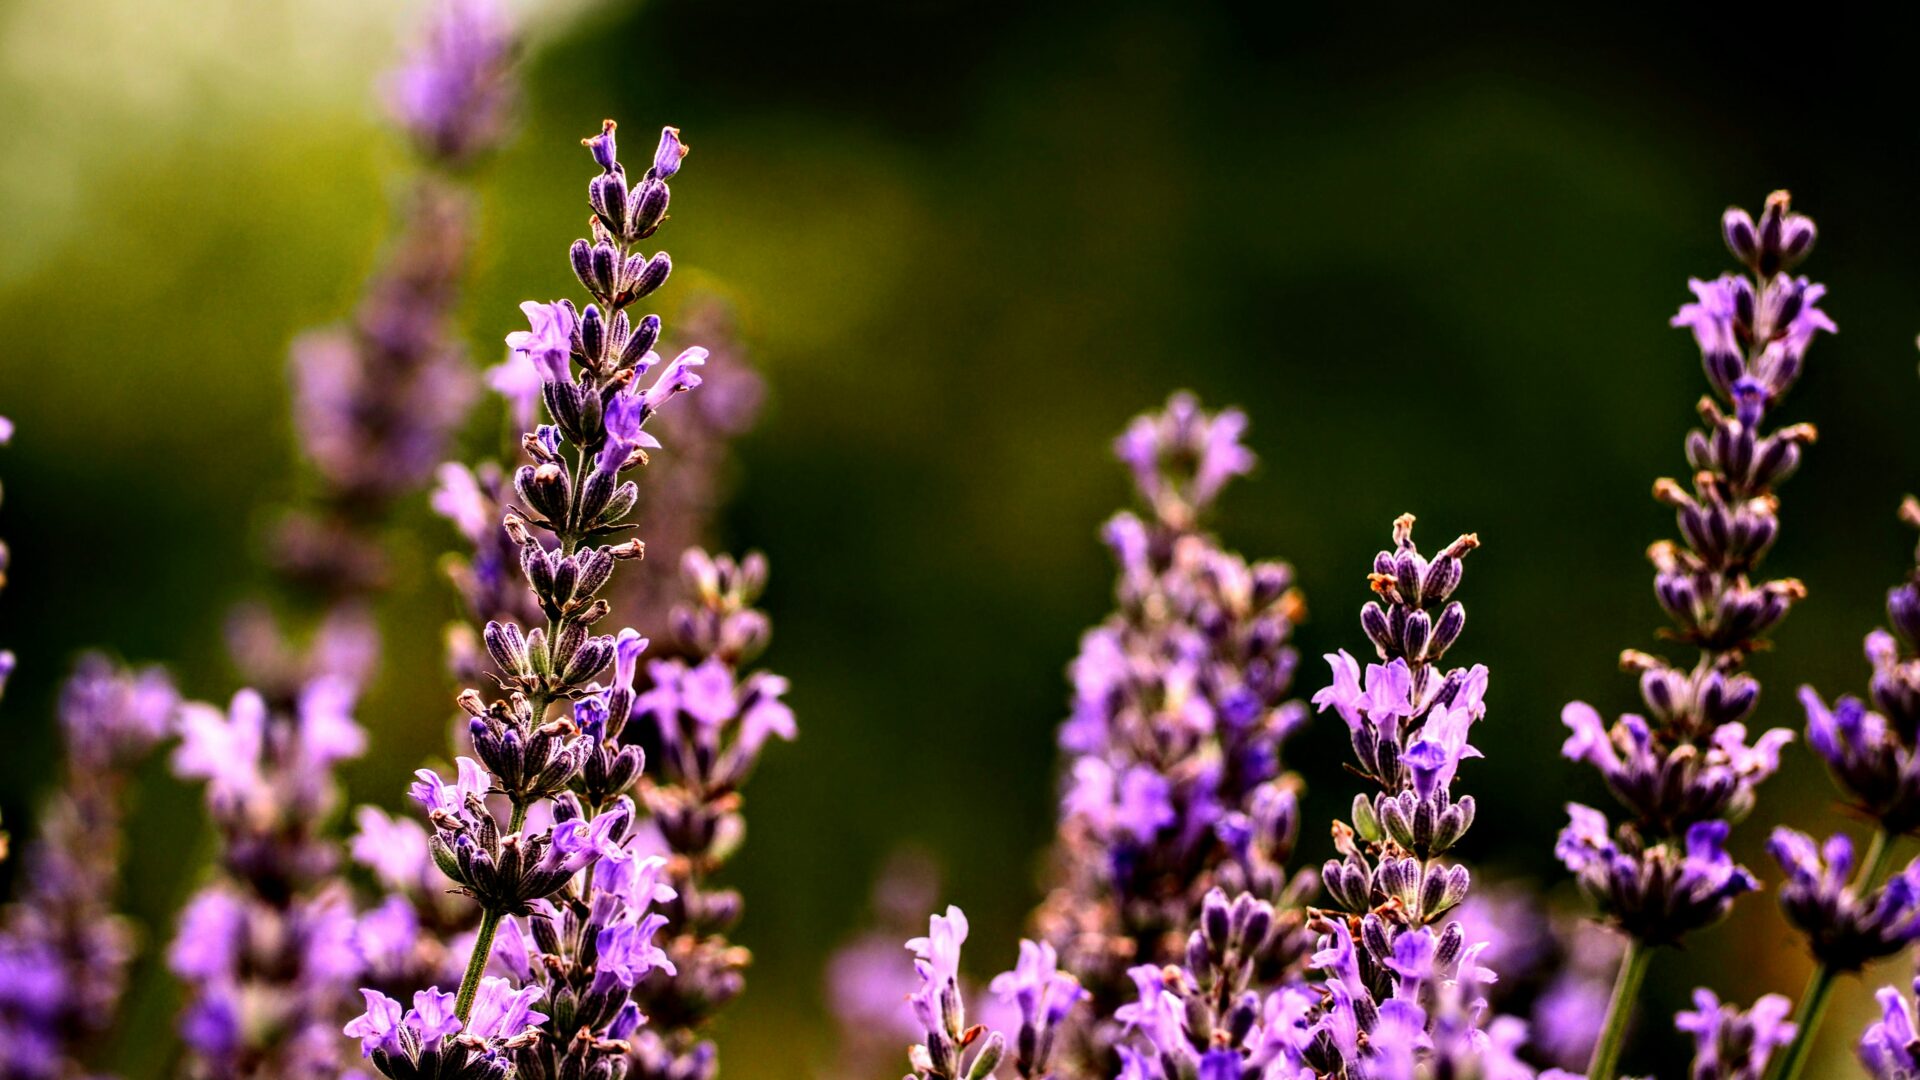 A field of purple lavender flowers.